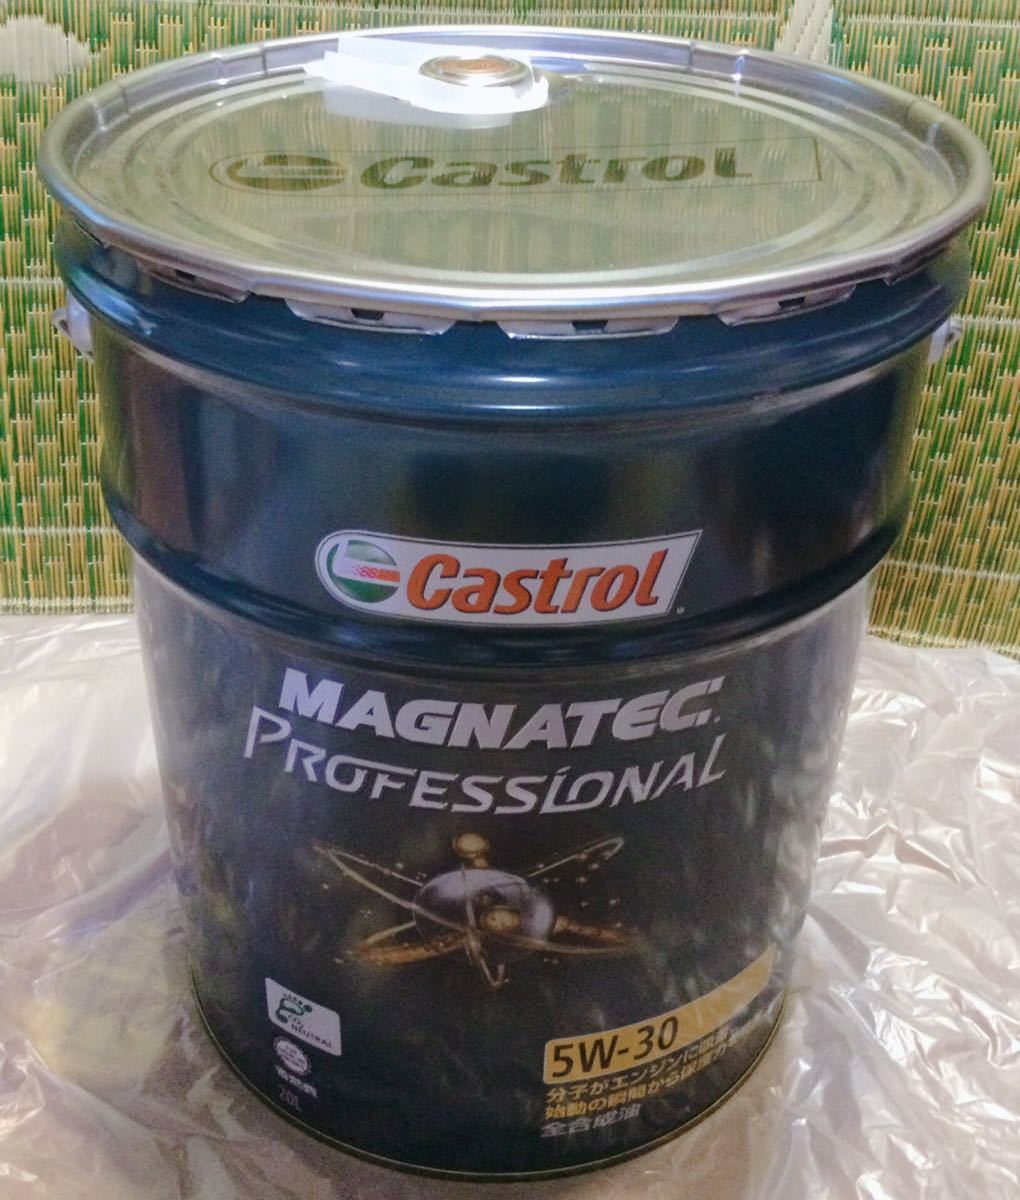  new goods Castrol Magna Tec Professional Castrol MAGNATEC 5w-30 20L